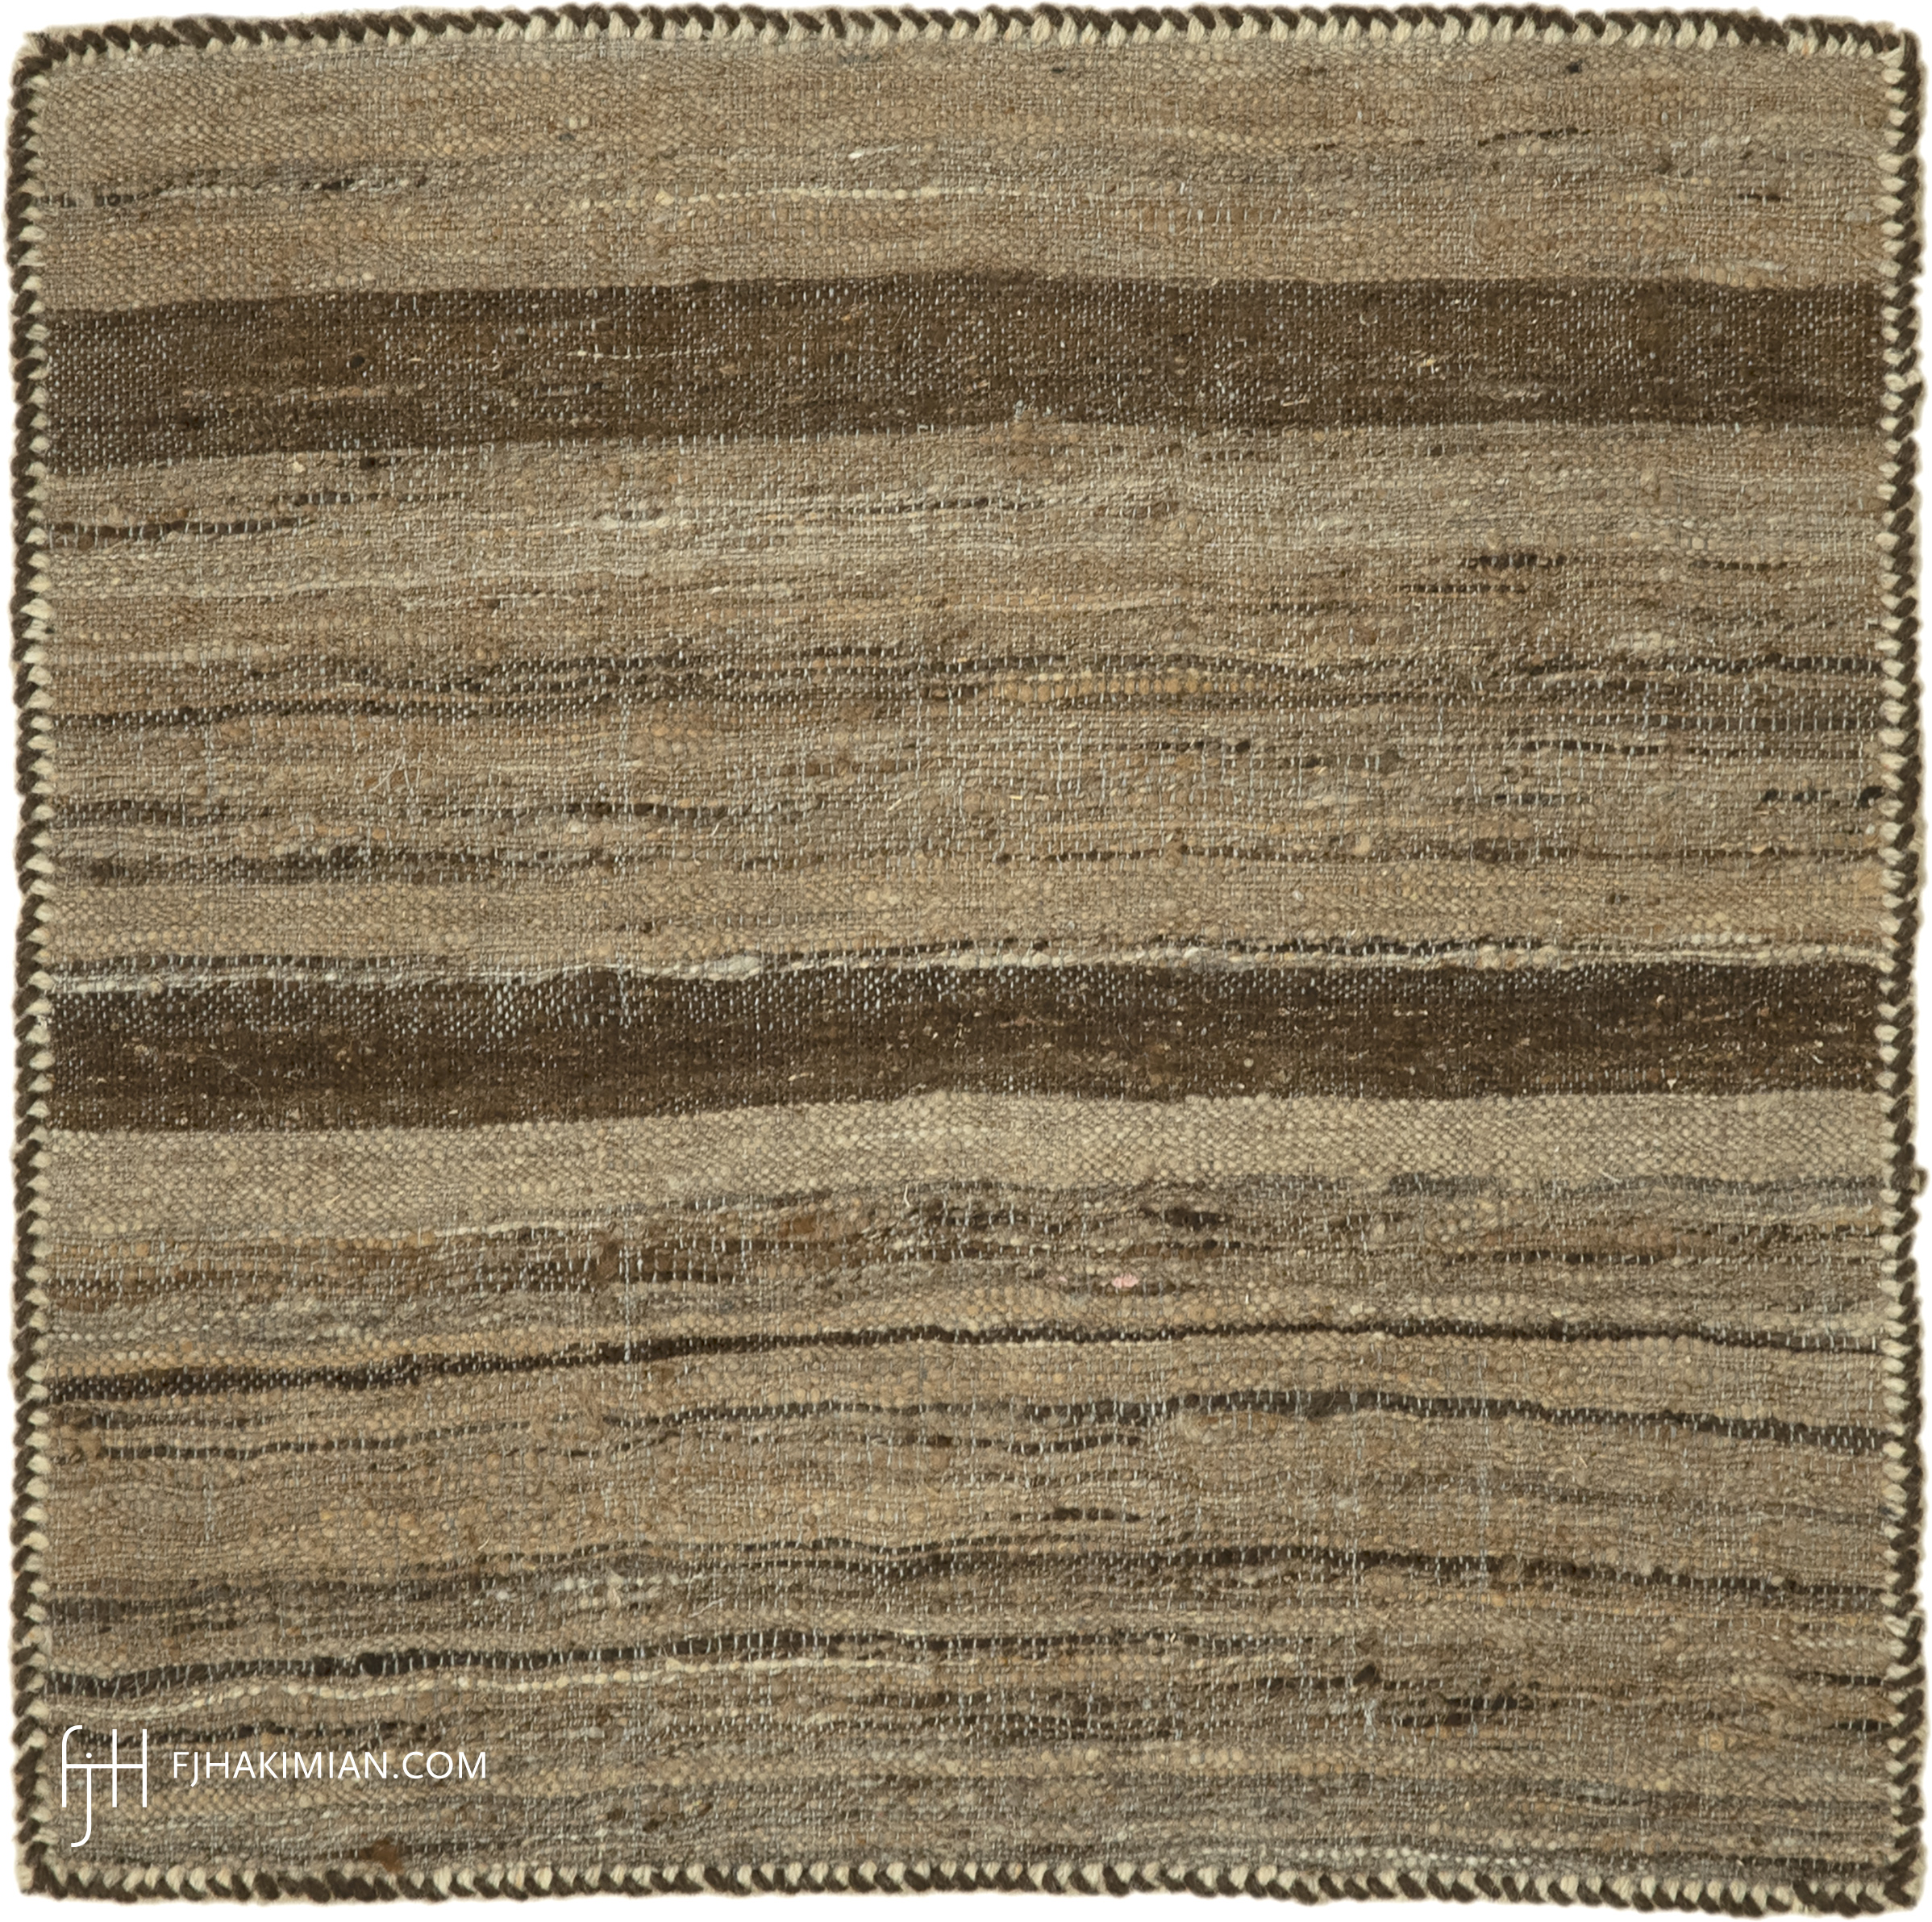 FJ Hakimian | 17354 | Custom Carpet